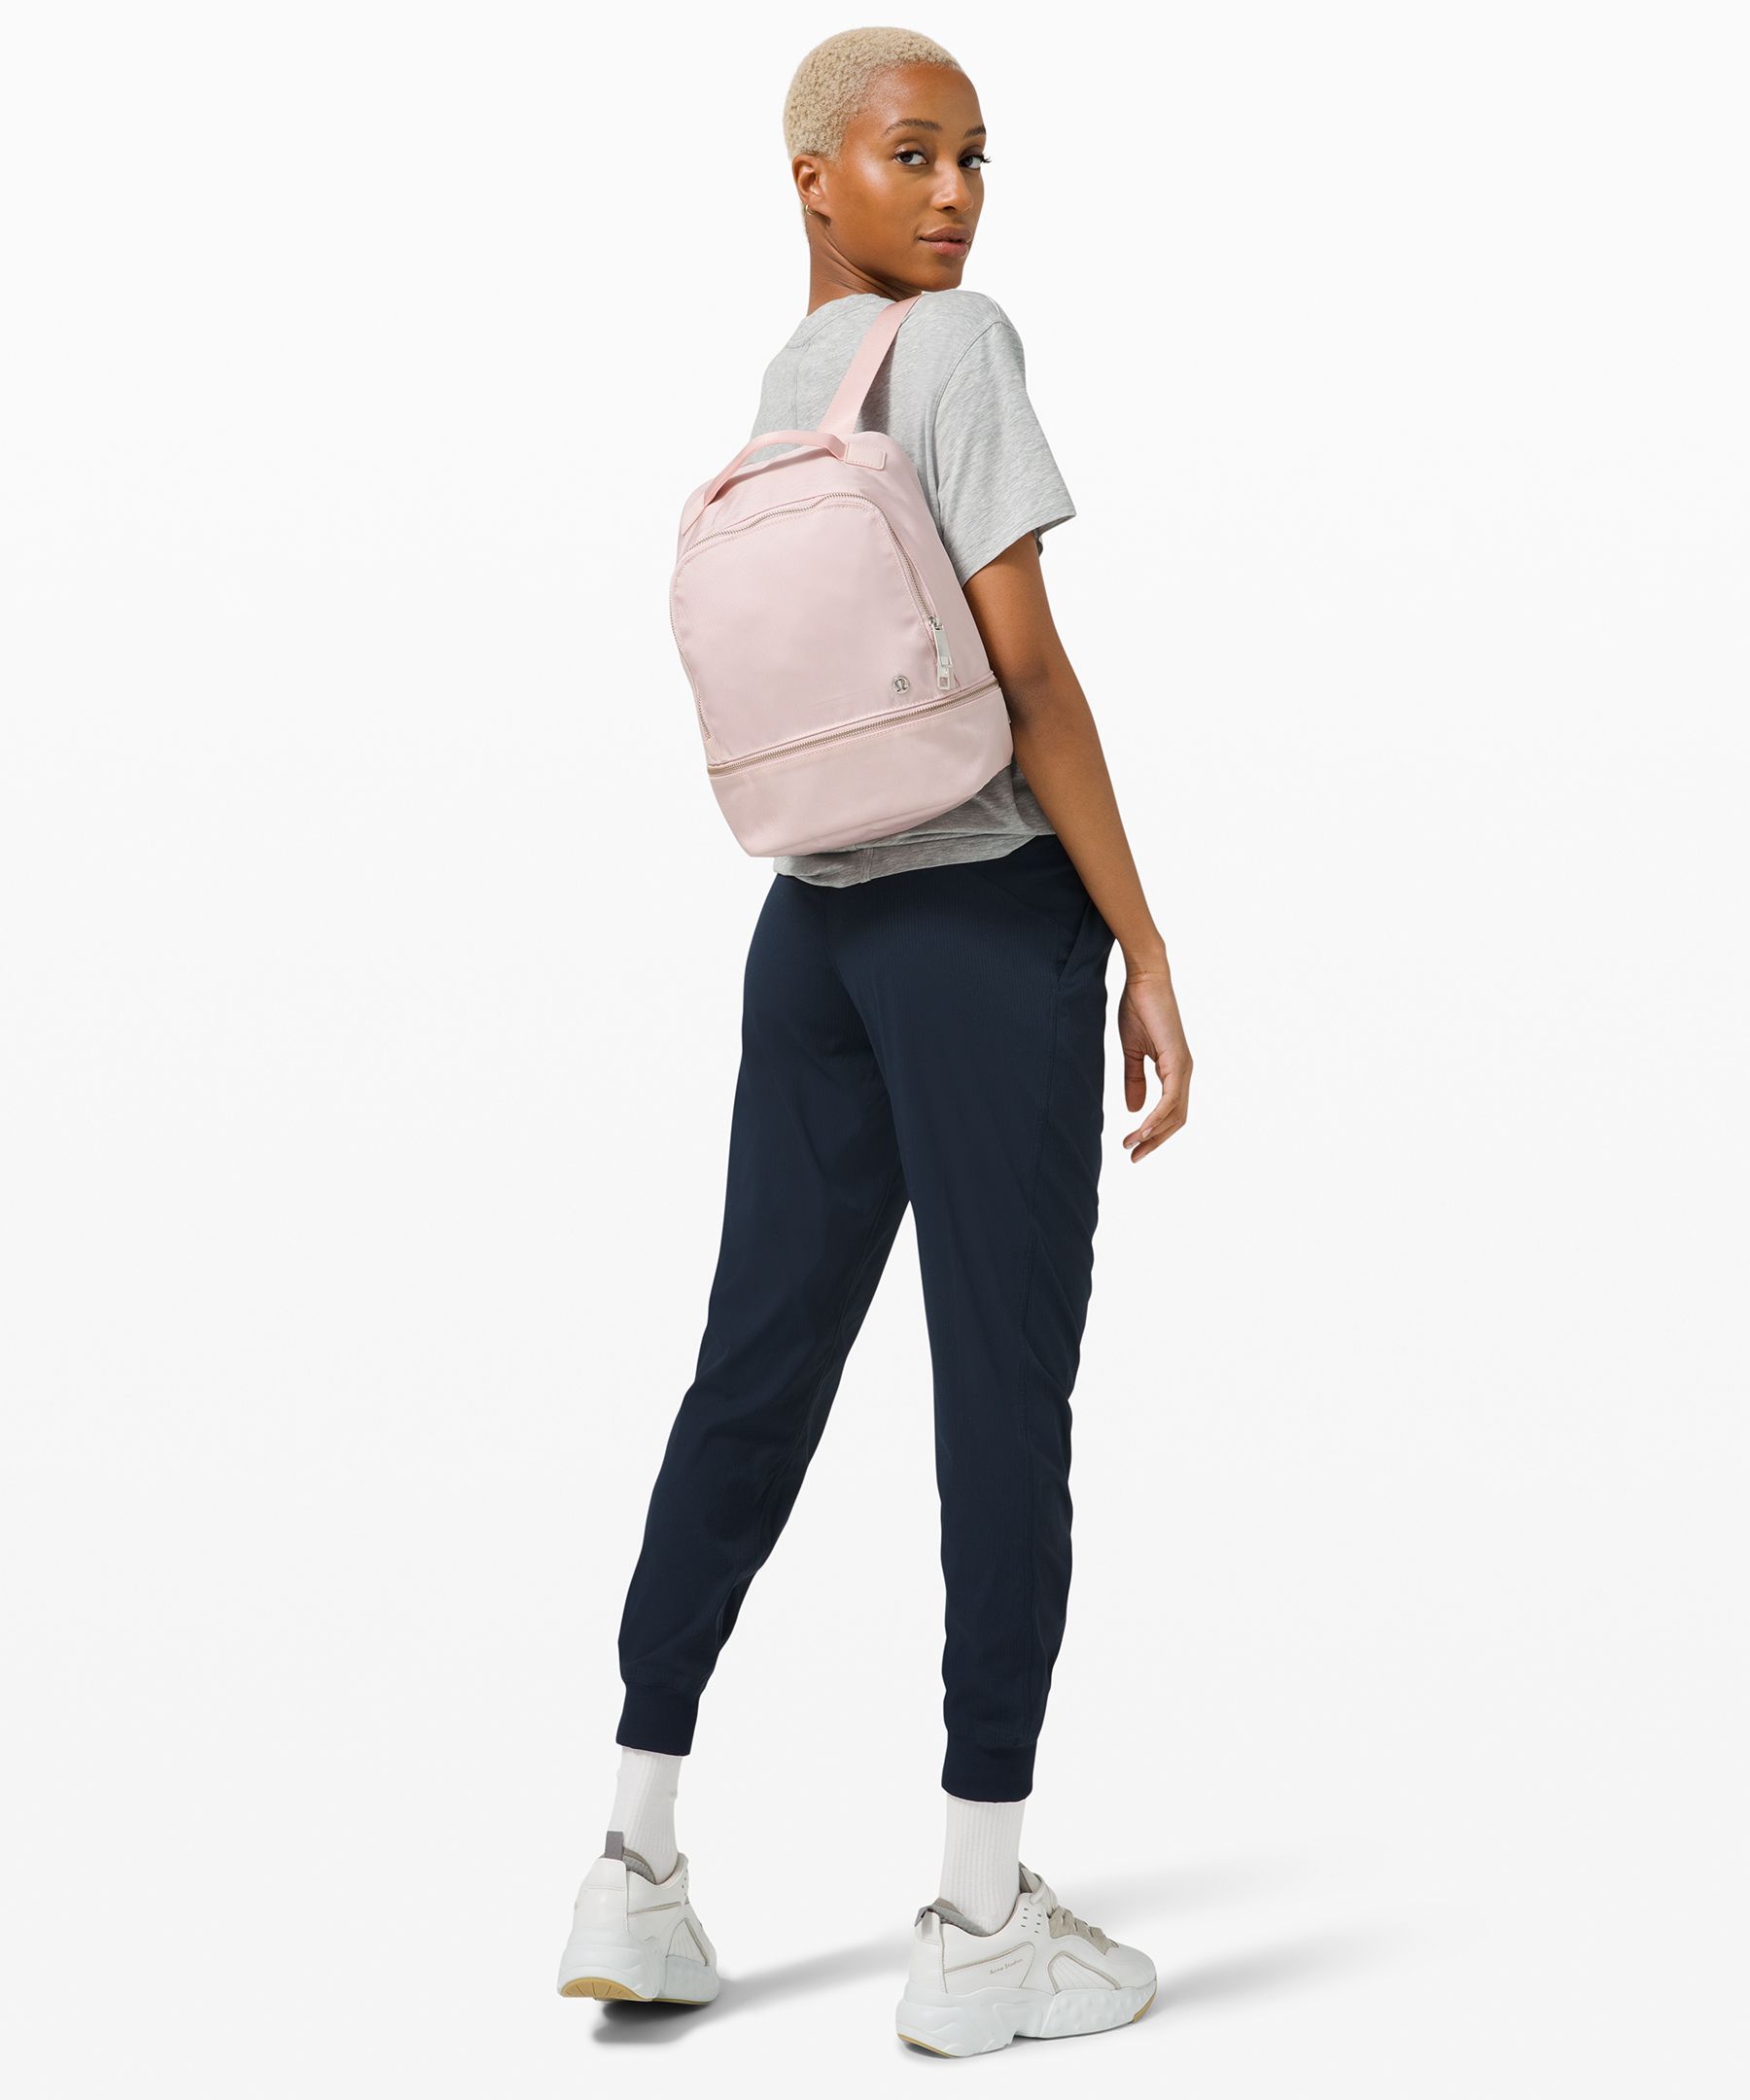 pink lululemon backpack